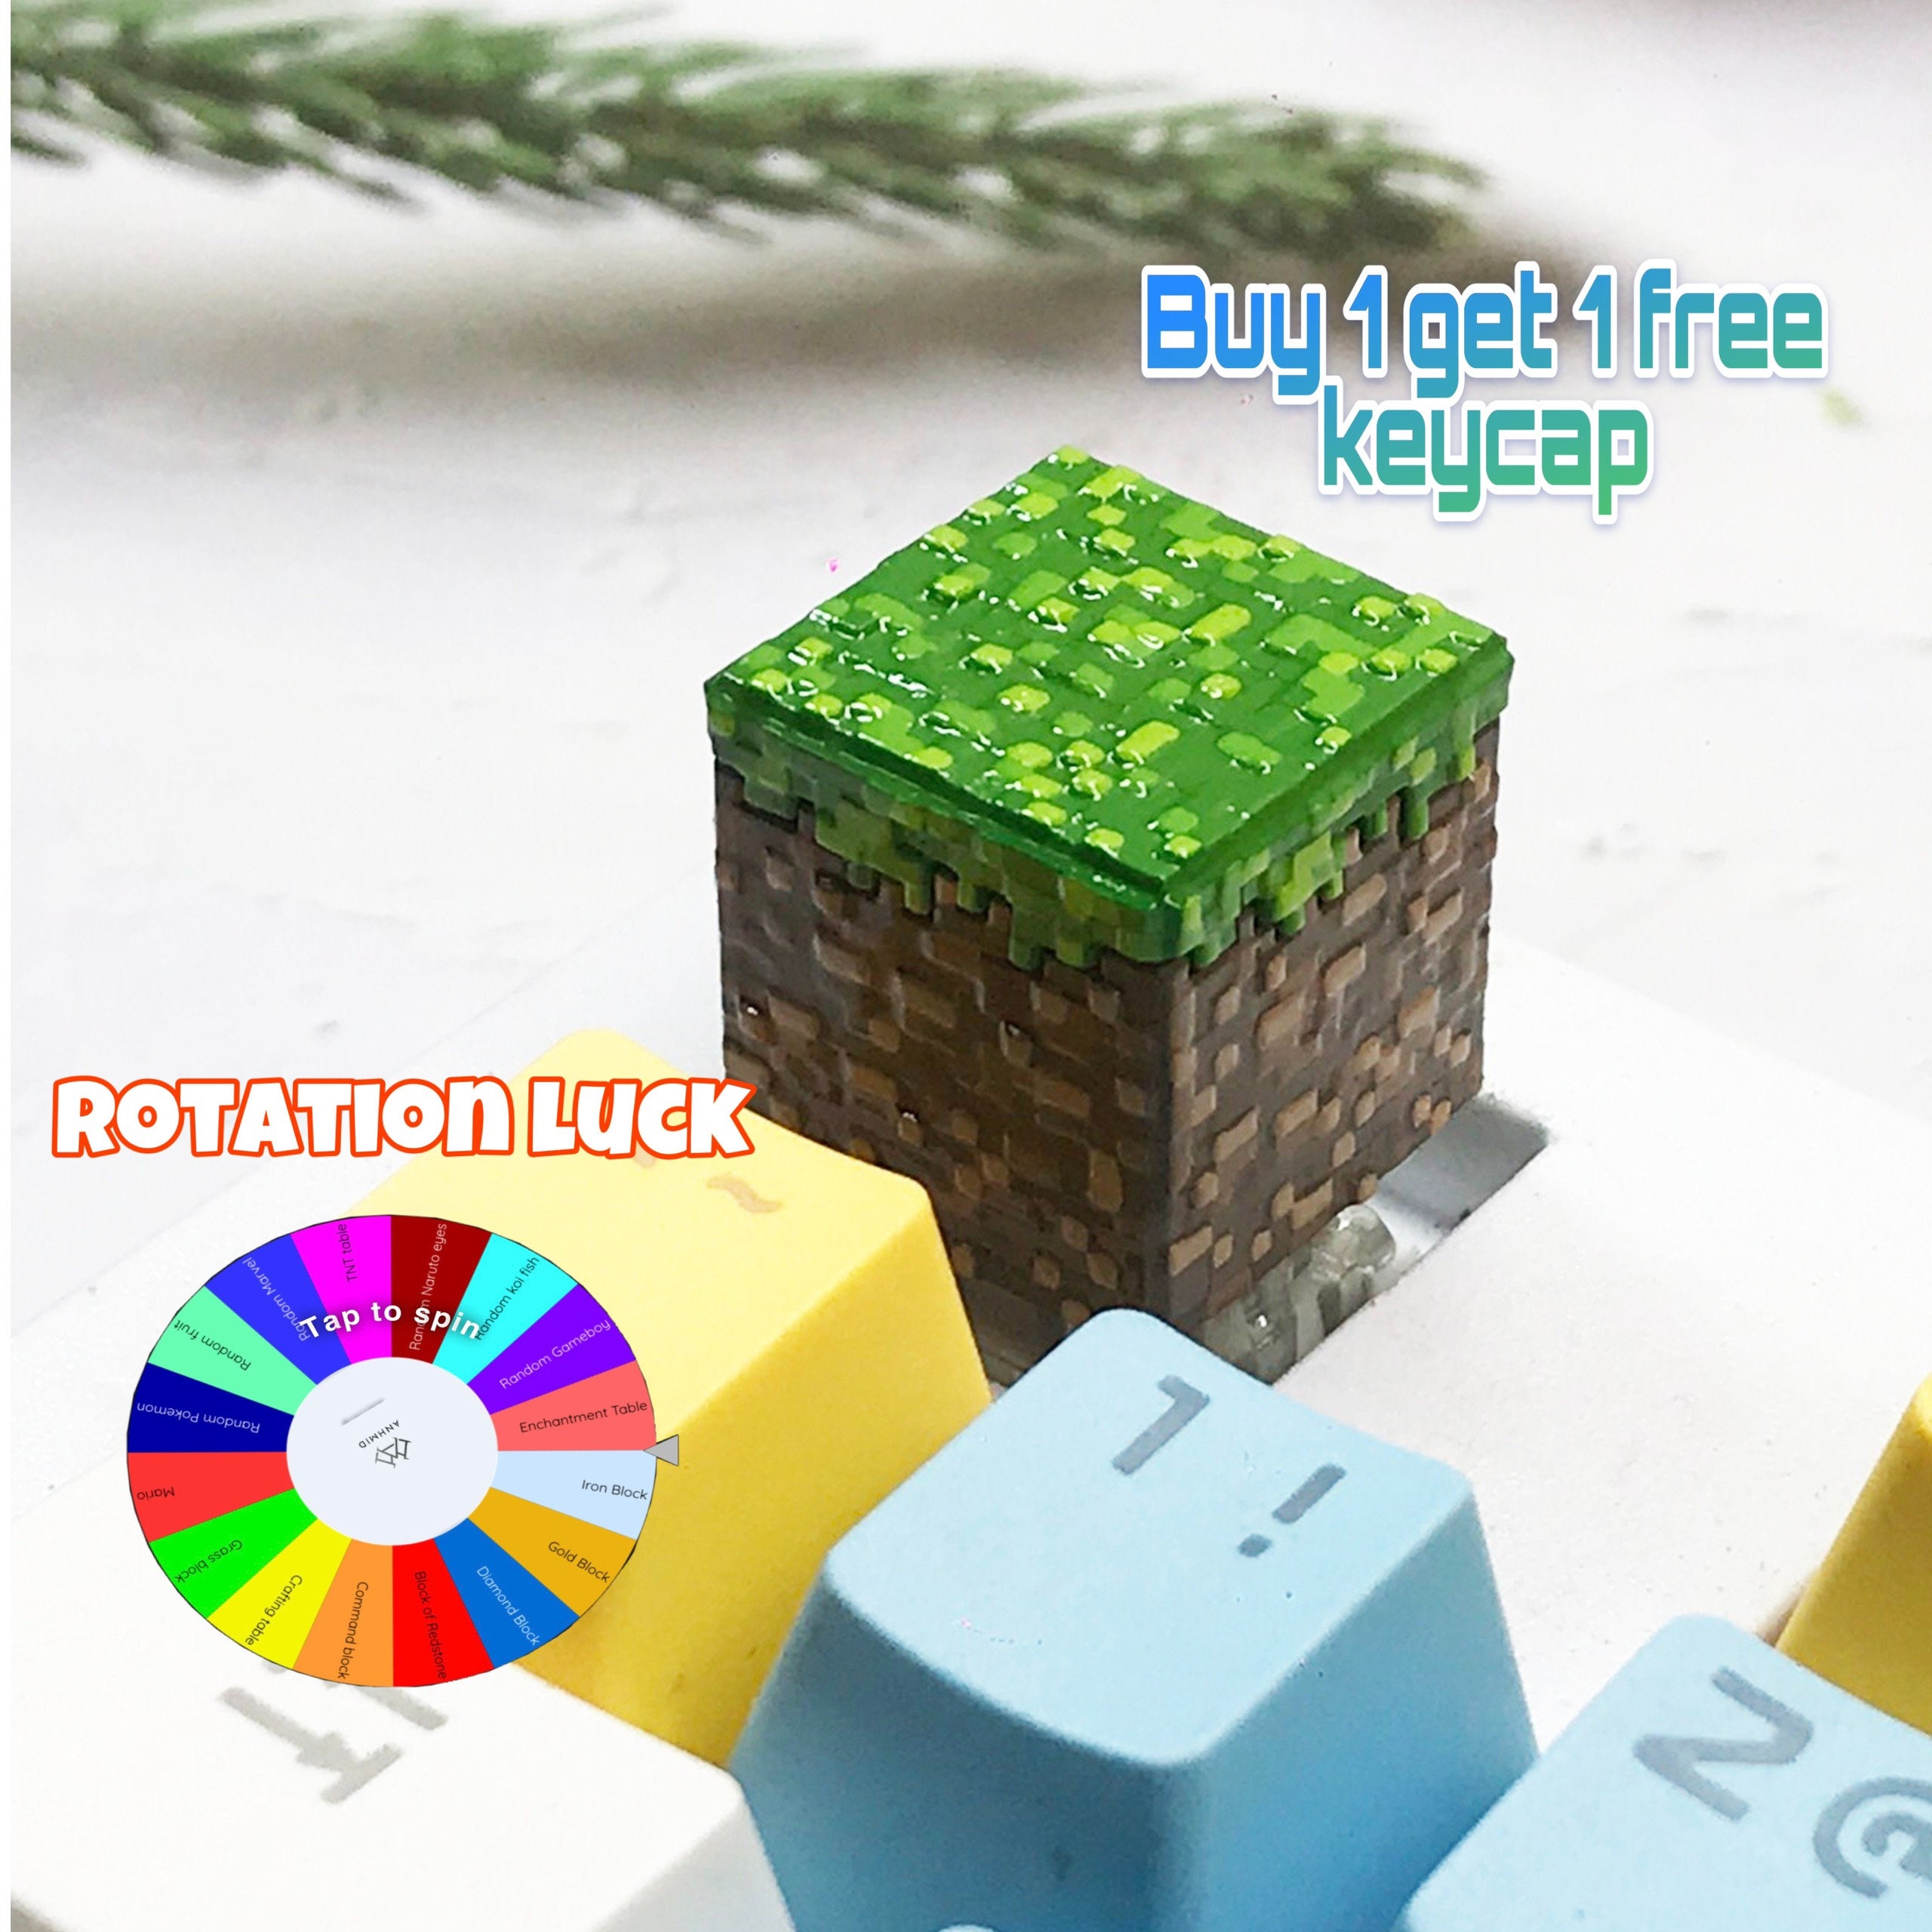 Grass Block - Minecraft Grass Block Printable Papercraft Template